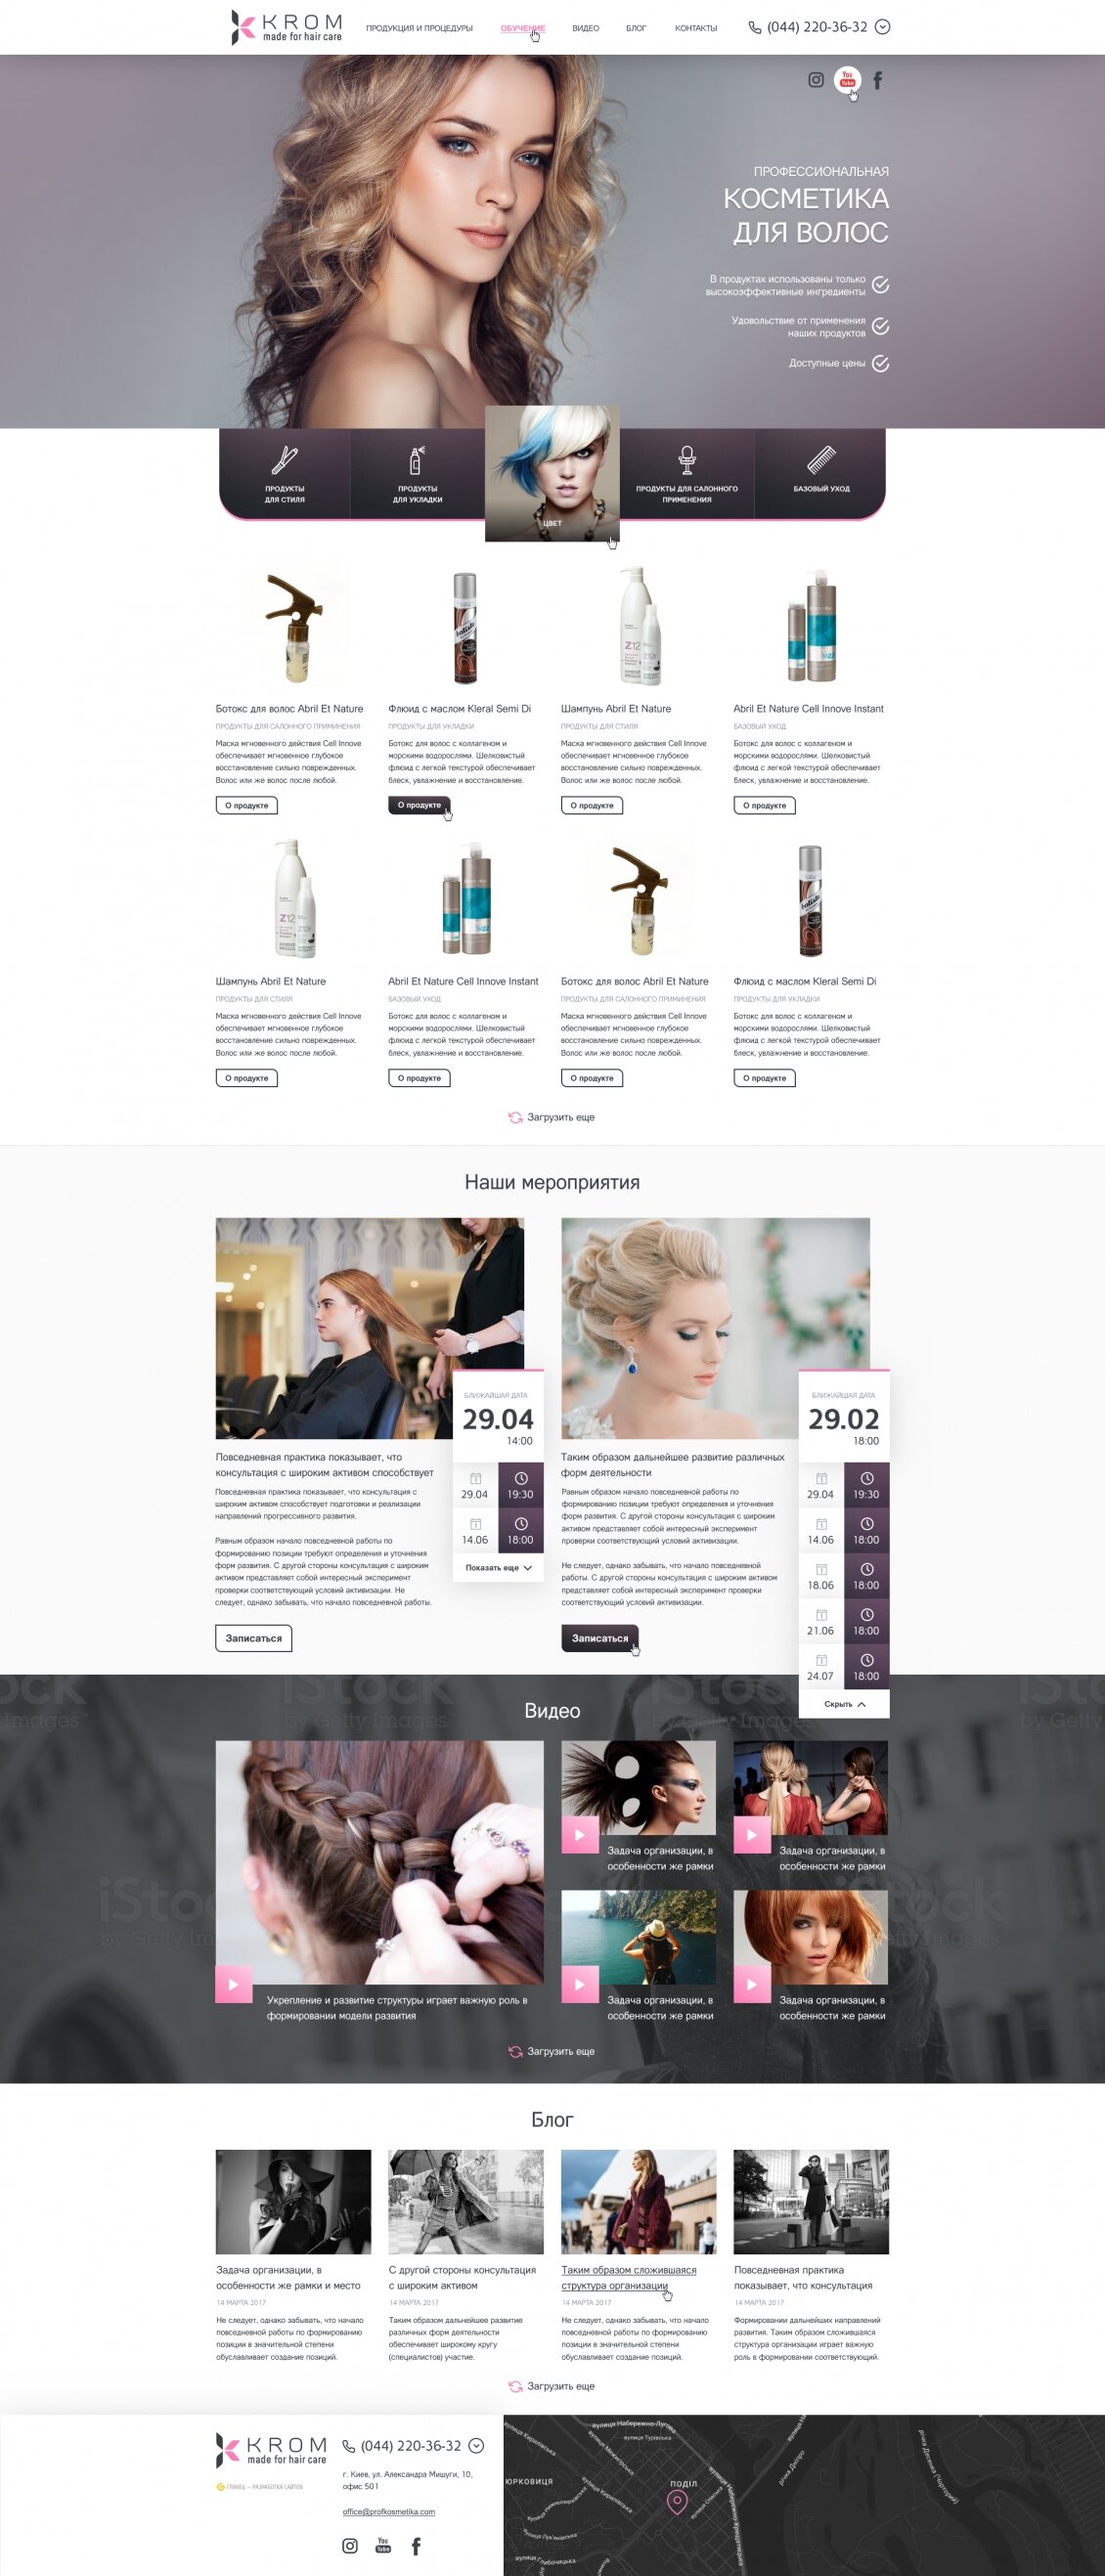 ™ Глянец, студия веб-дизайна - Одностраничный сайт для бренда &quot;KROM&quot; - изготовление профессиональной косметики для волос_8